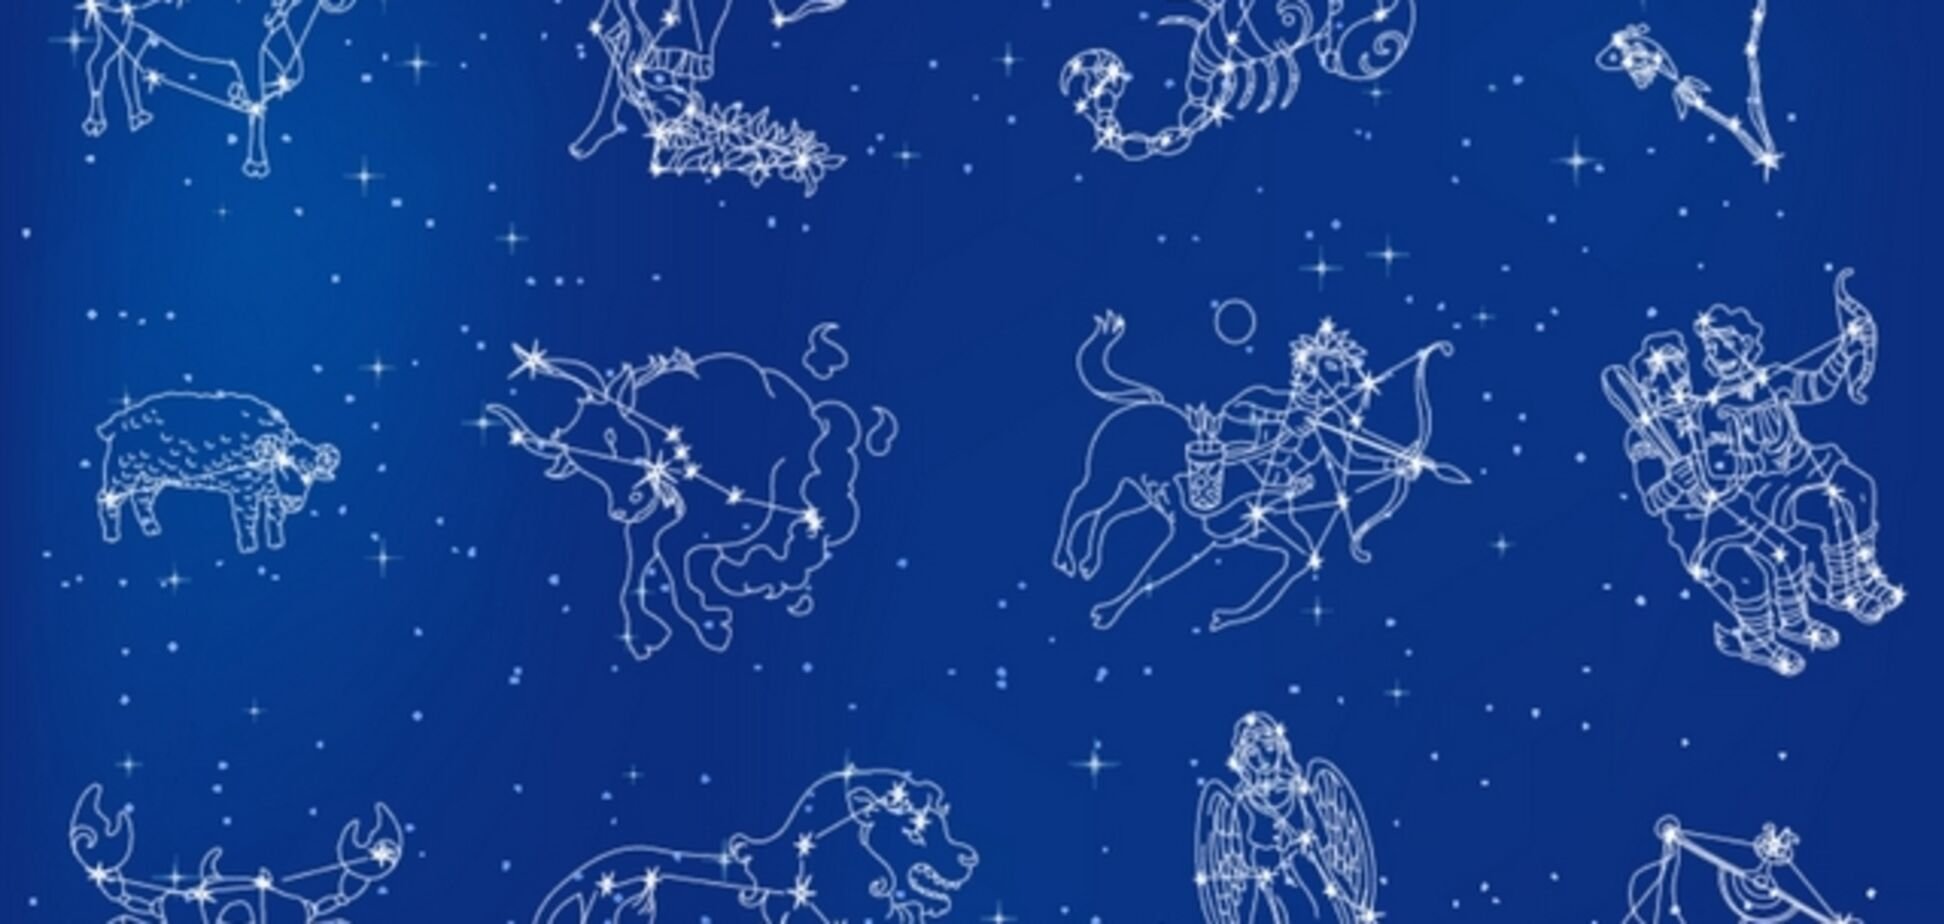 Знаки зодиака на русском. Зодиакальные созвездия и знаки зодиака. Созвездия 12 знаков зодиака. Зодиакальные созвездия это созвездия. Созвездие зназнаков зодиака.